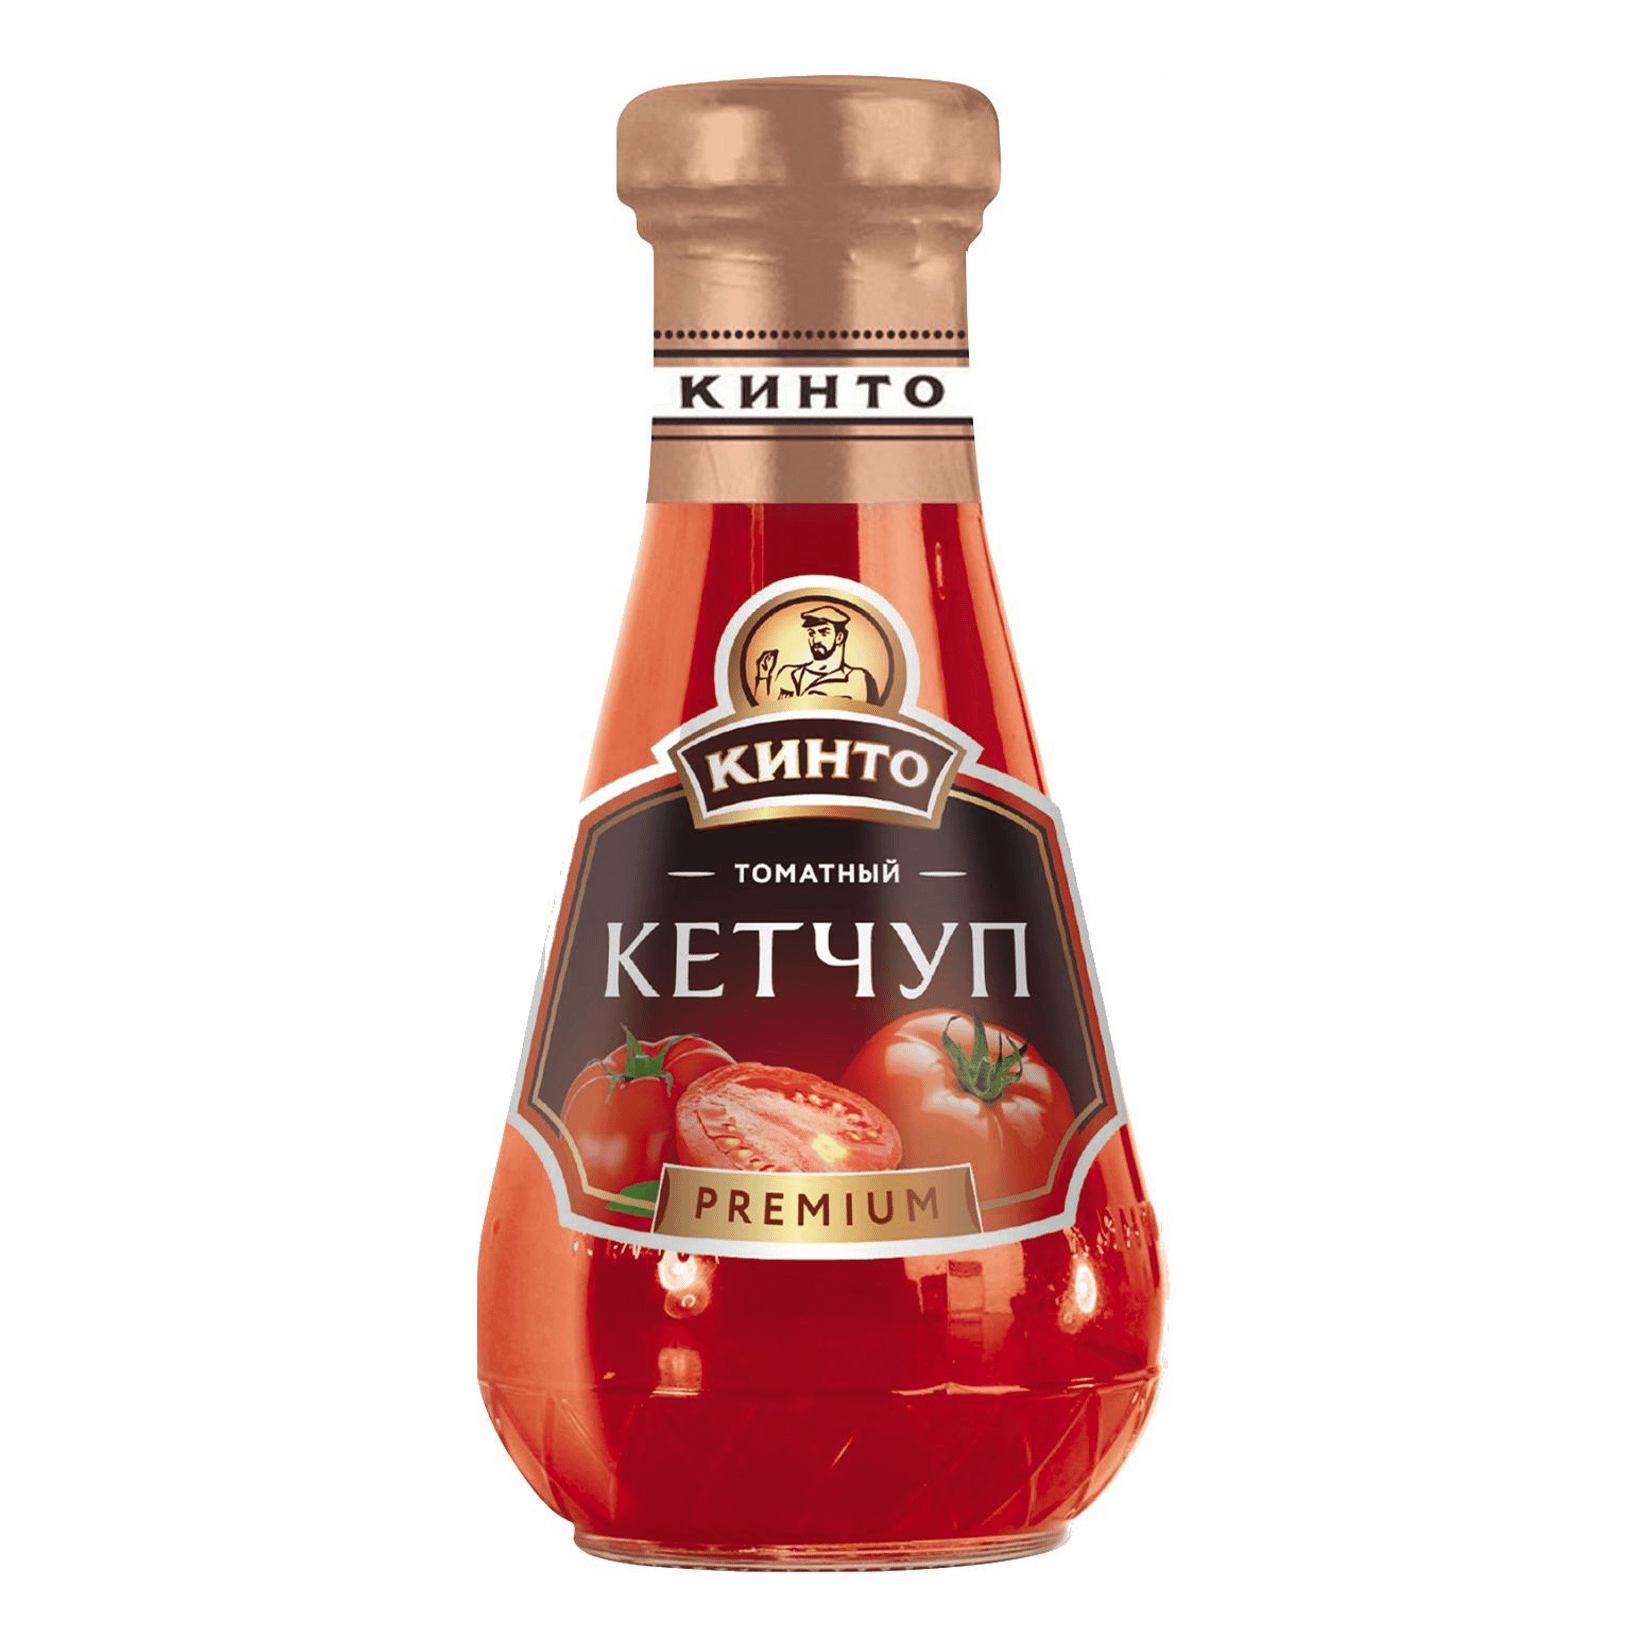 Кетчуп Кинто премиум томатный универсальный 320 г